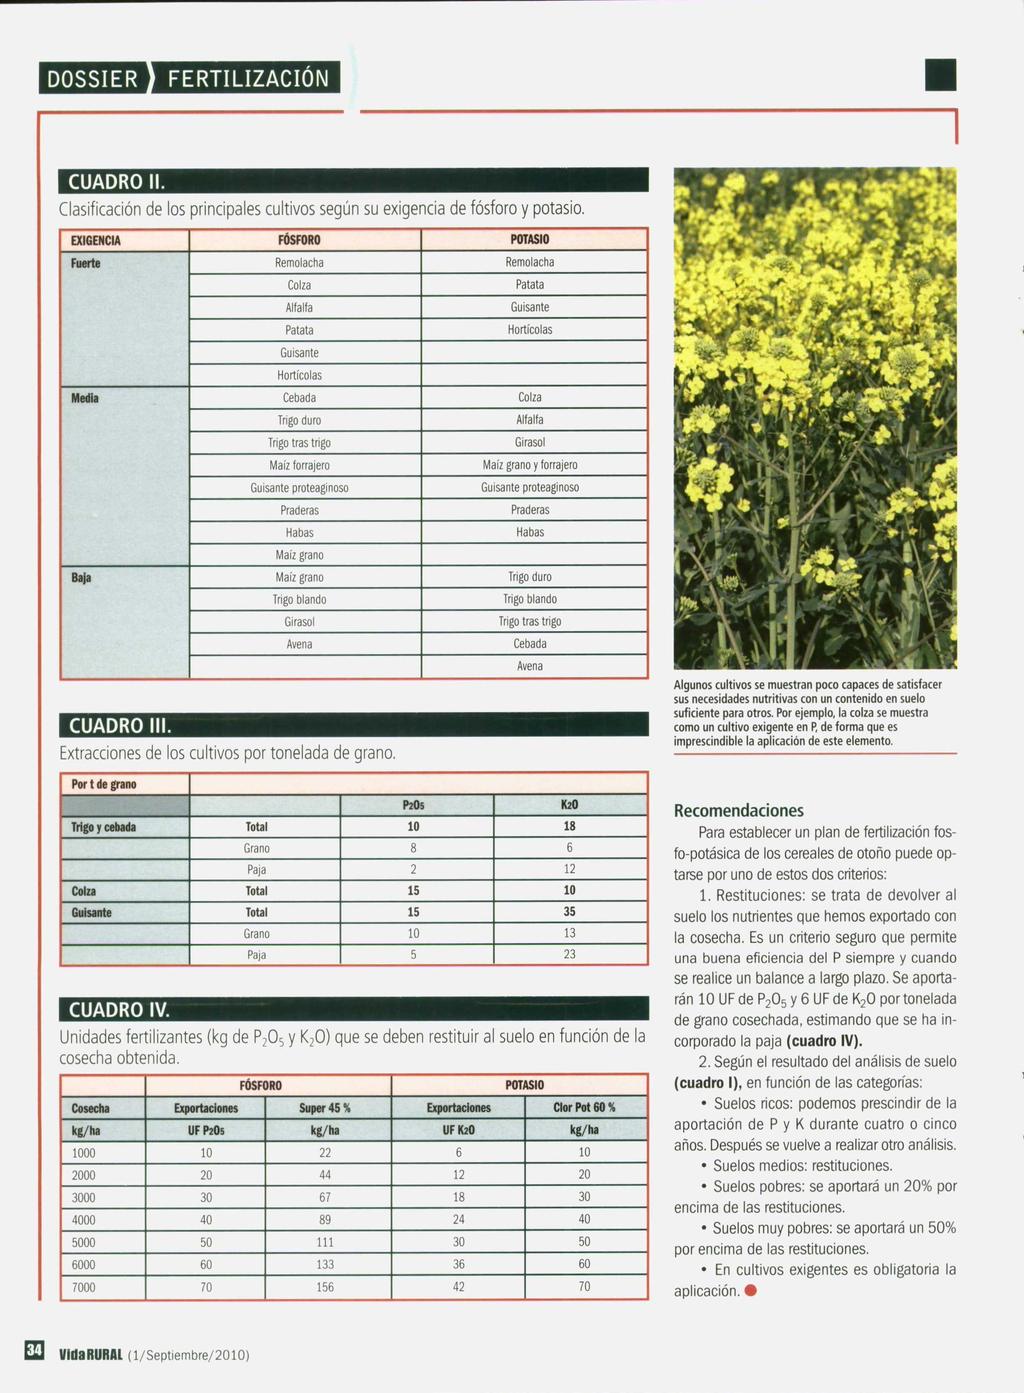 CUADRO II. Clasificación de los principales cultivos según su exigencia de fósforo y potasio.